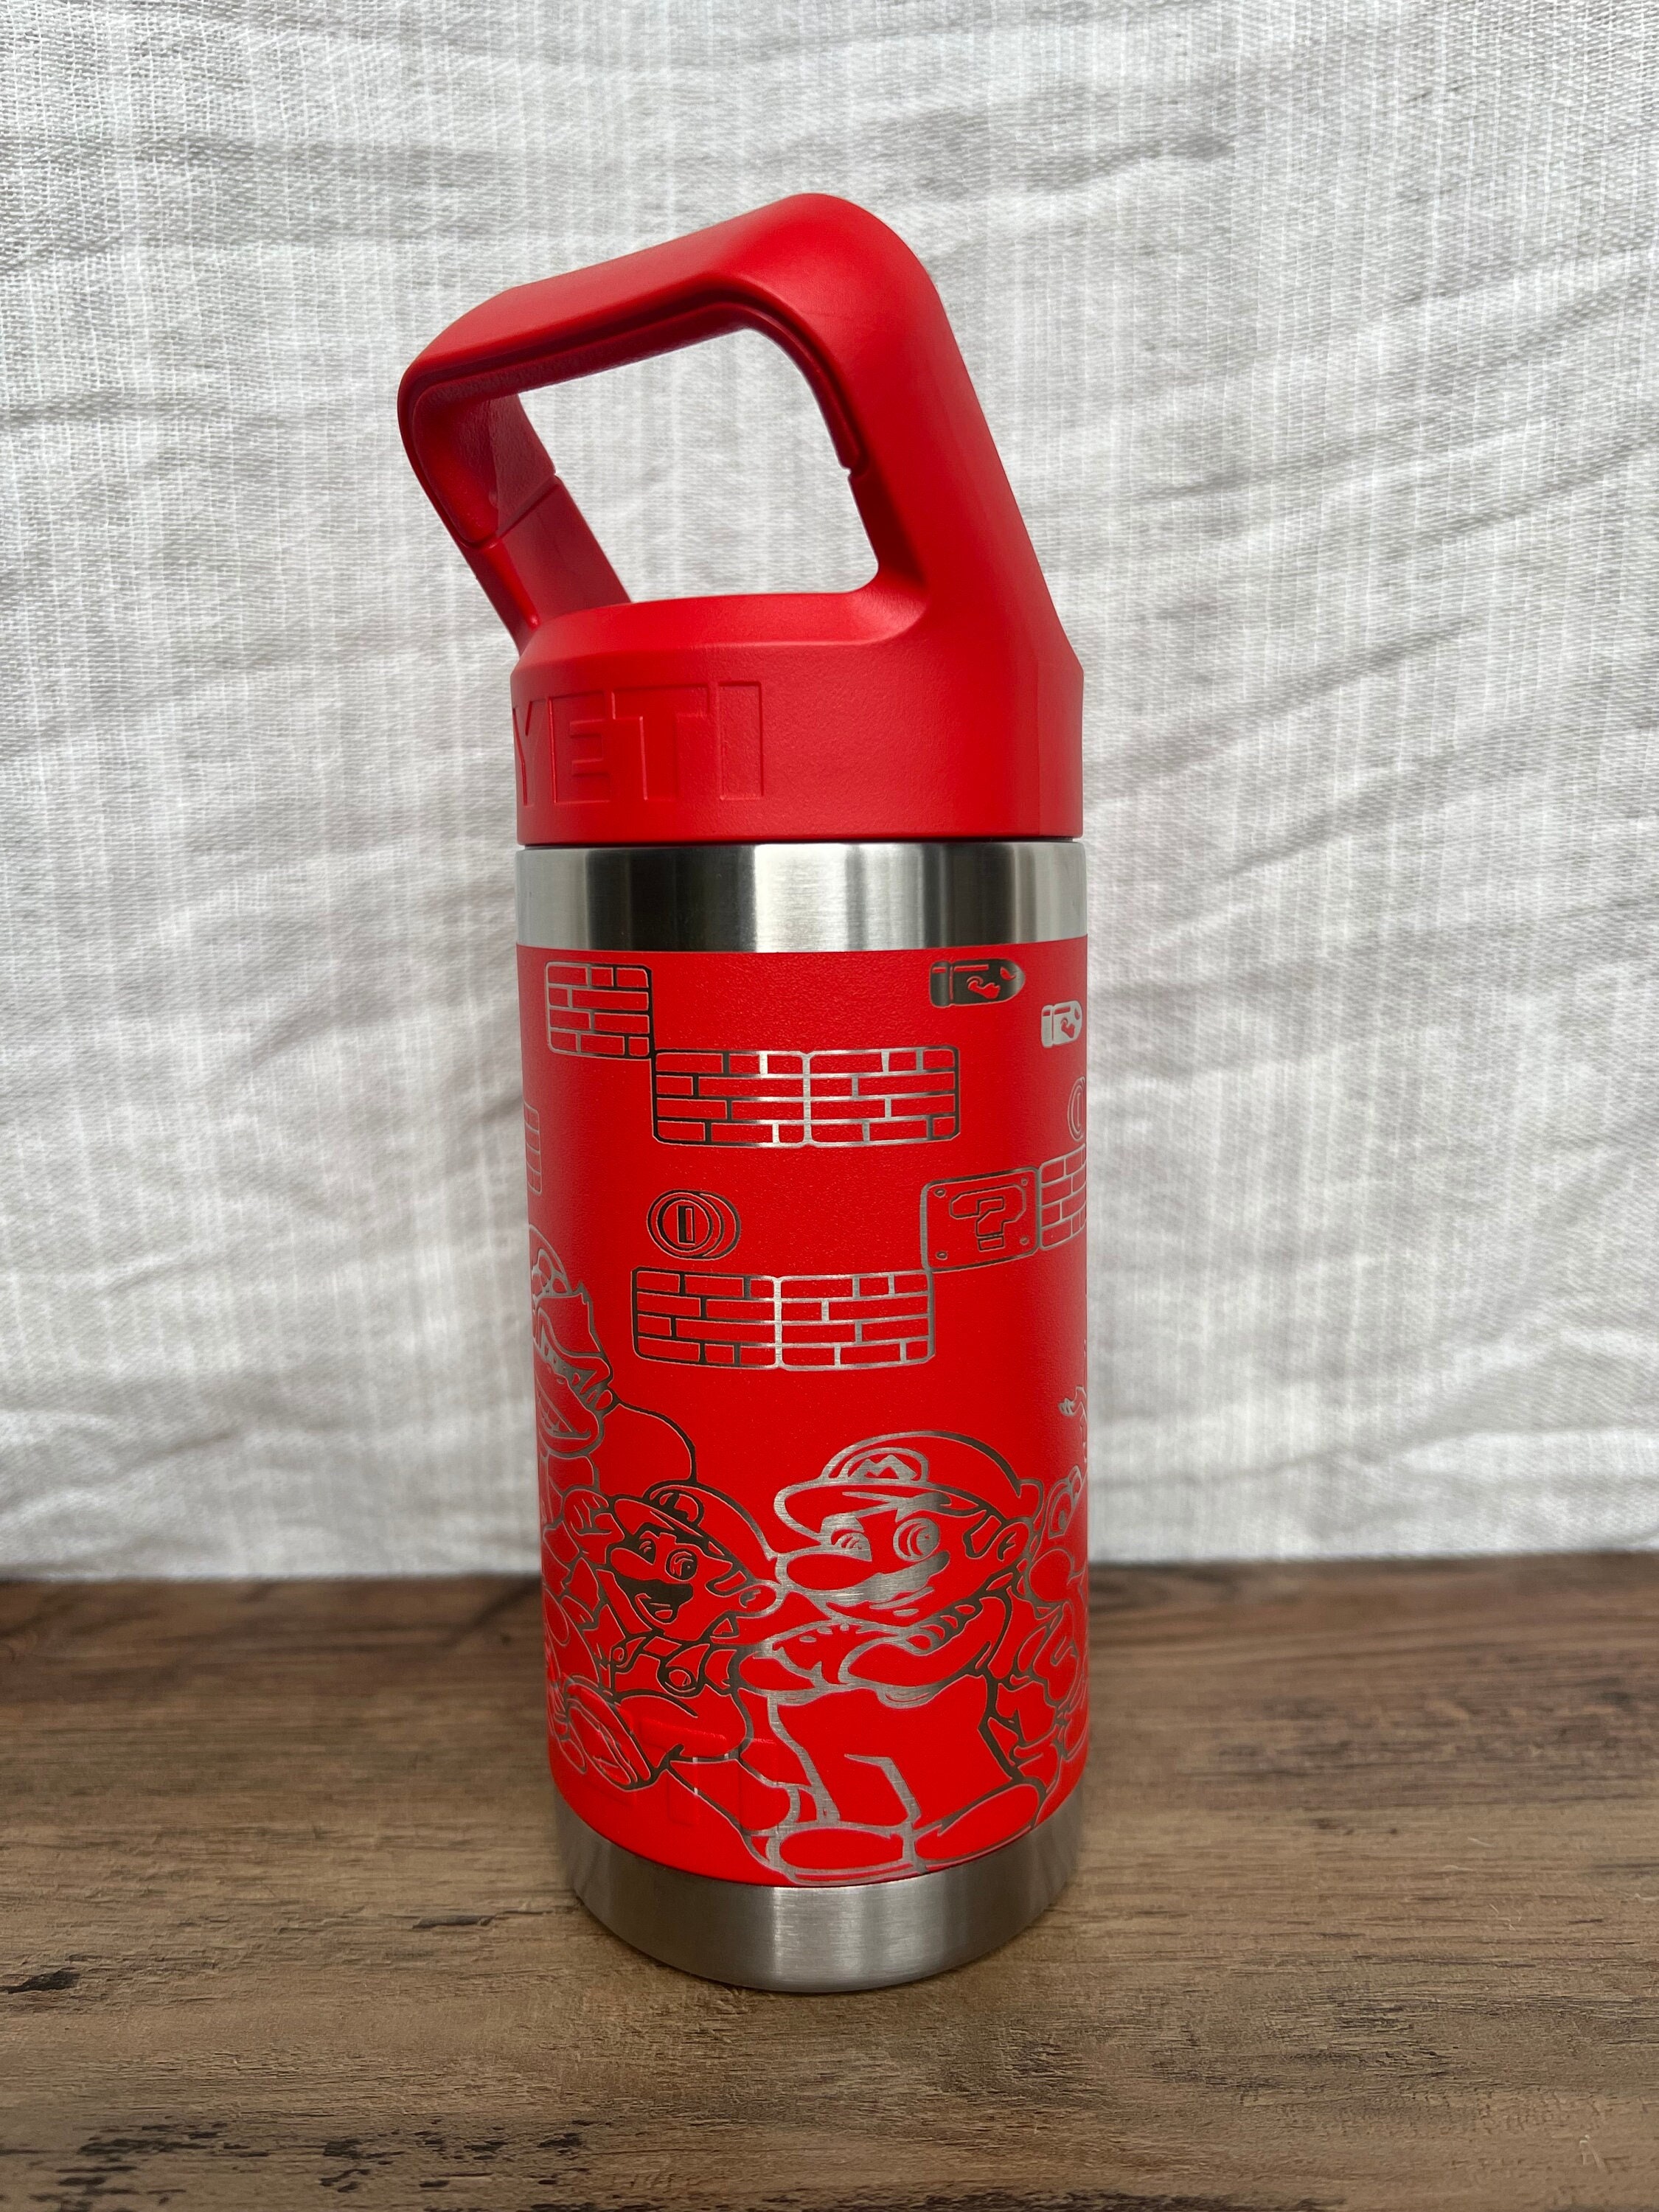 Laser Engraved Authentic Yeti 12oz Kids Bottle - Elephant - ImpressMeGifts